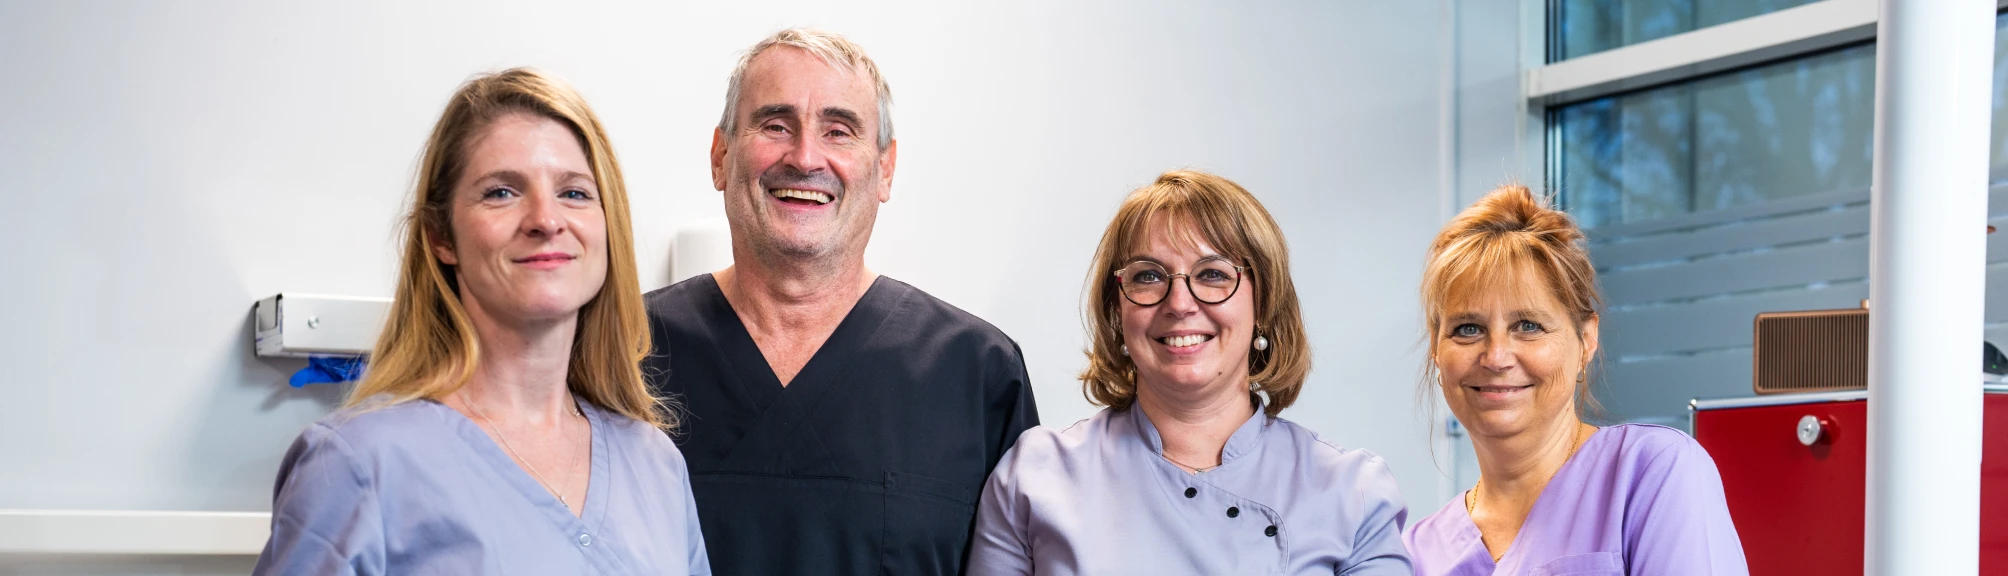 Dentistes qualifiés au cabinet dentaire City Chir à Metz